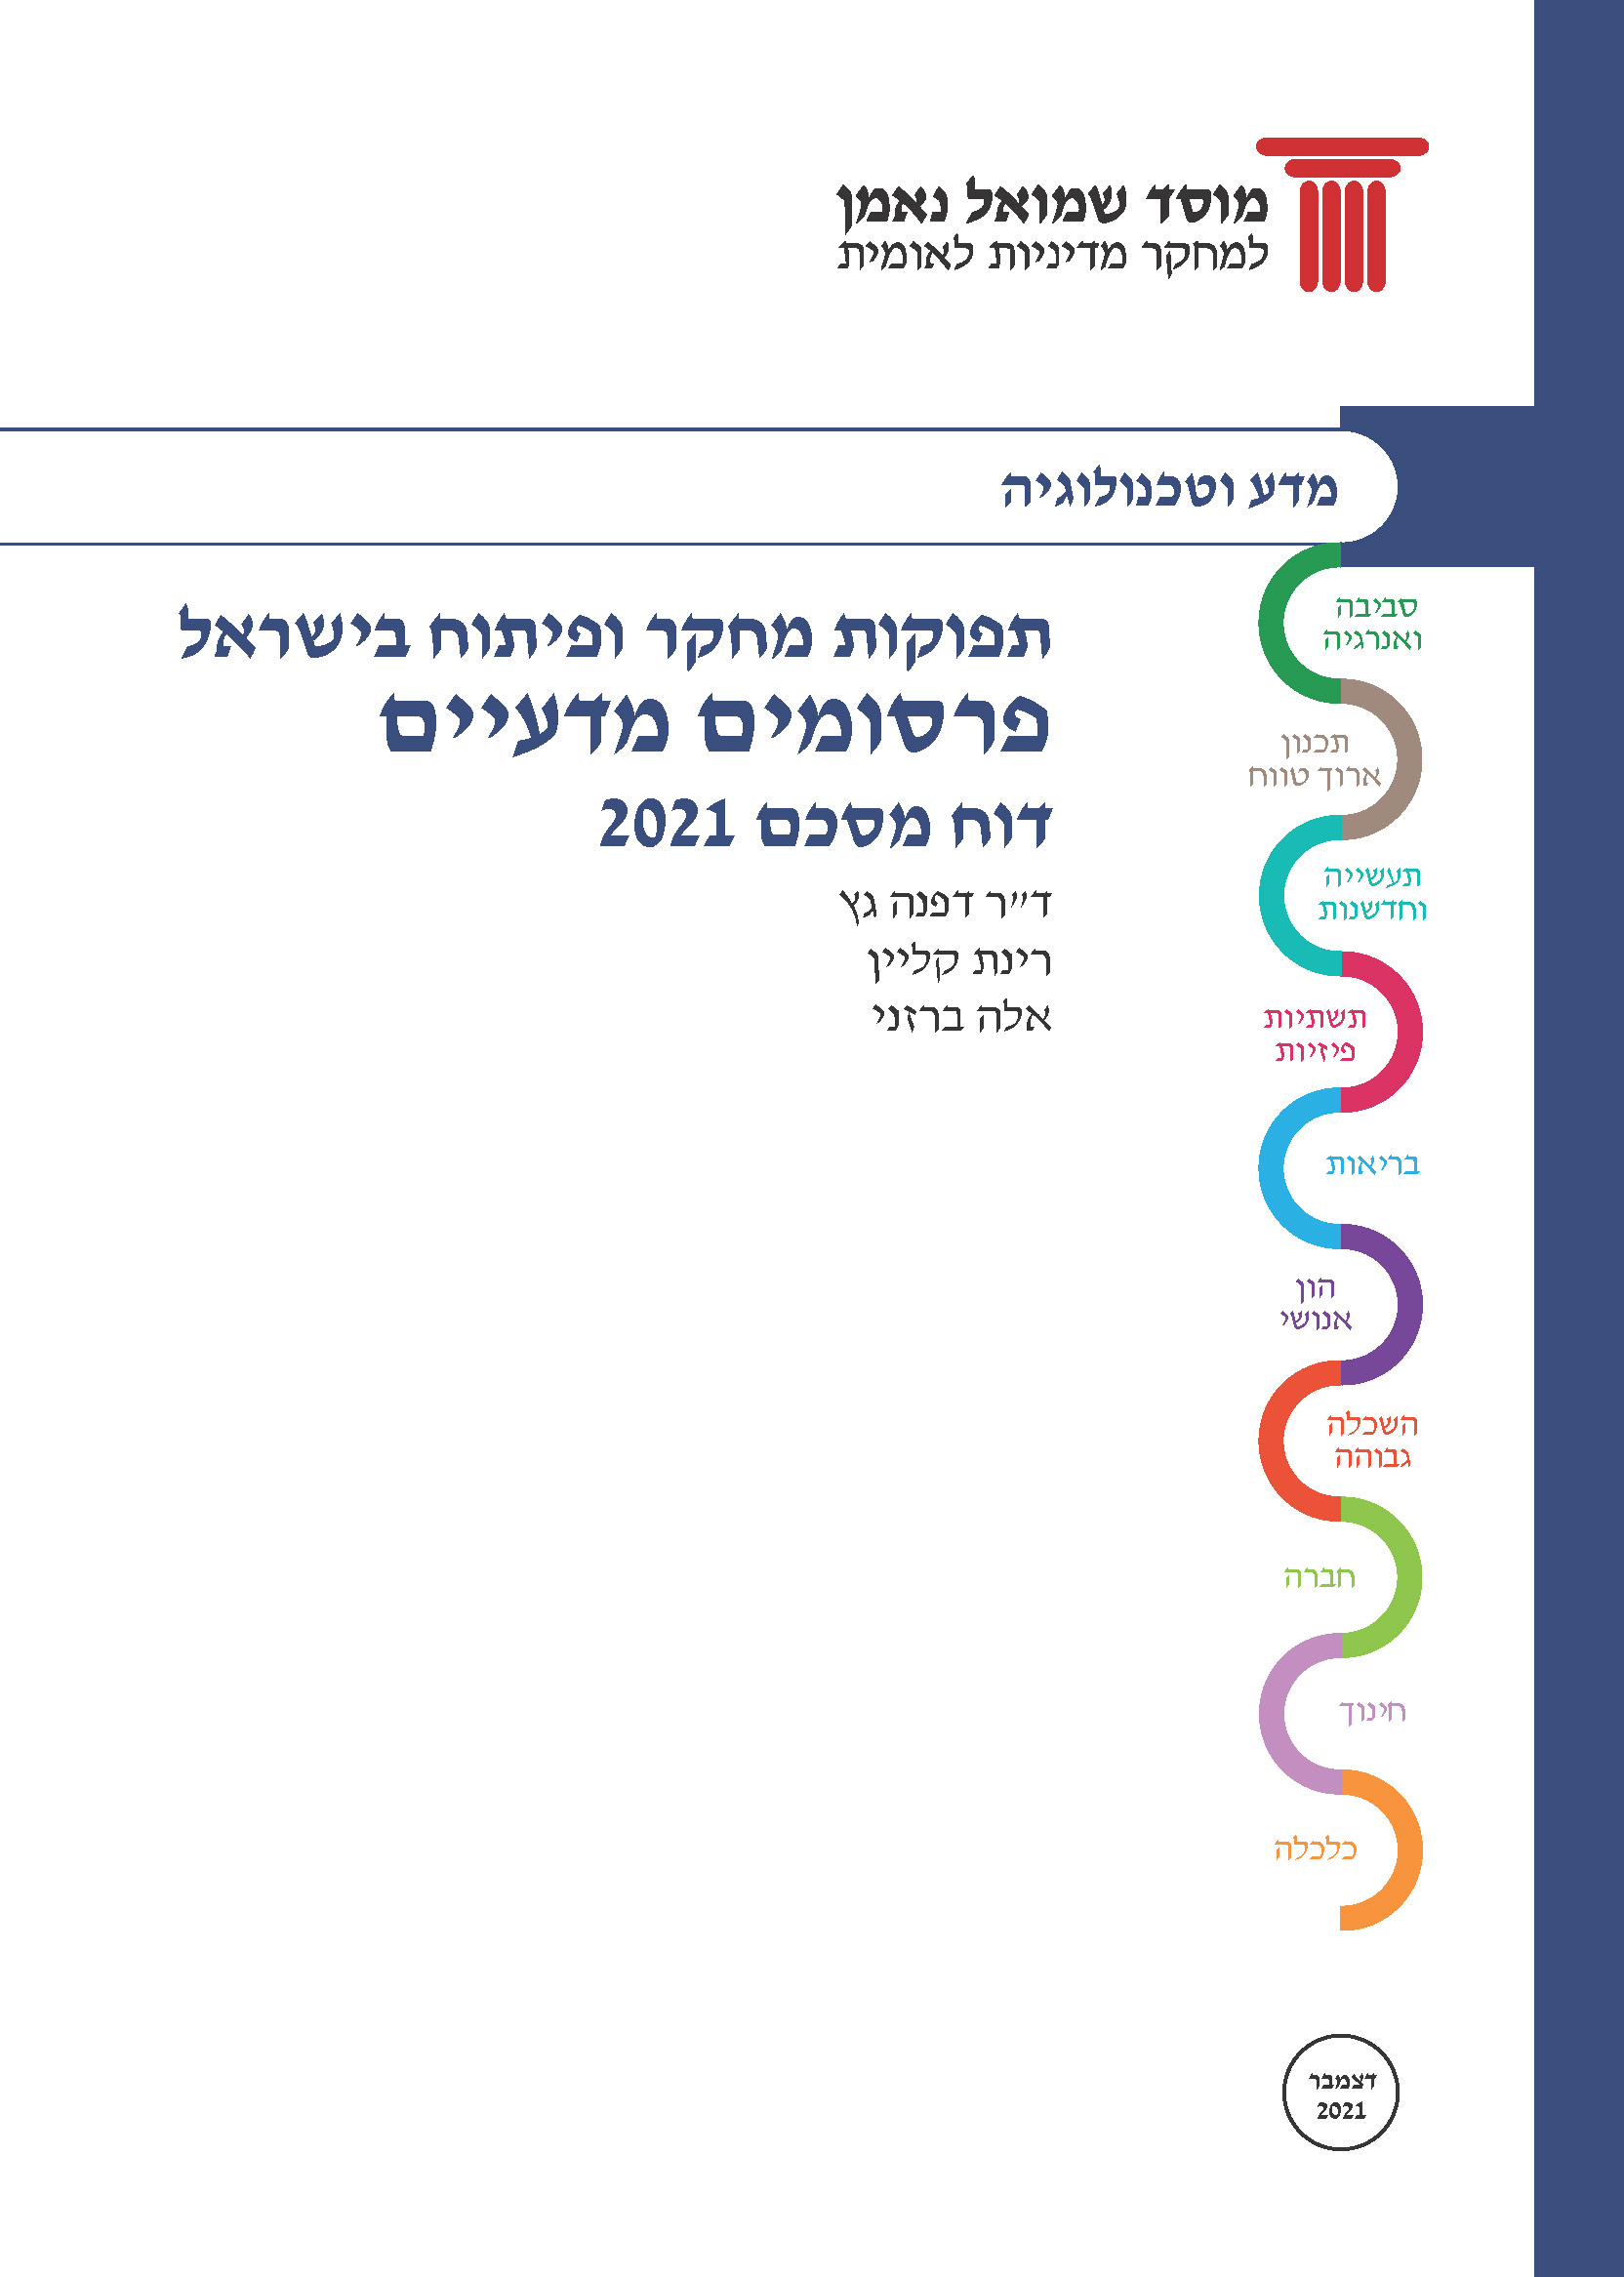 תפוקות מחקר ופיתוח בישראל / פרסומים מדעיים - 2021